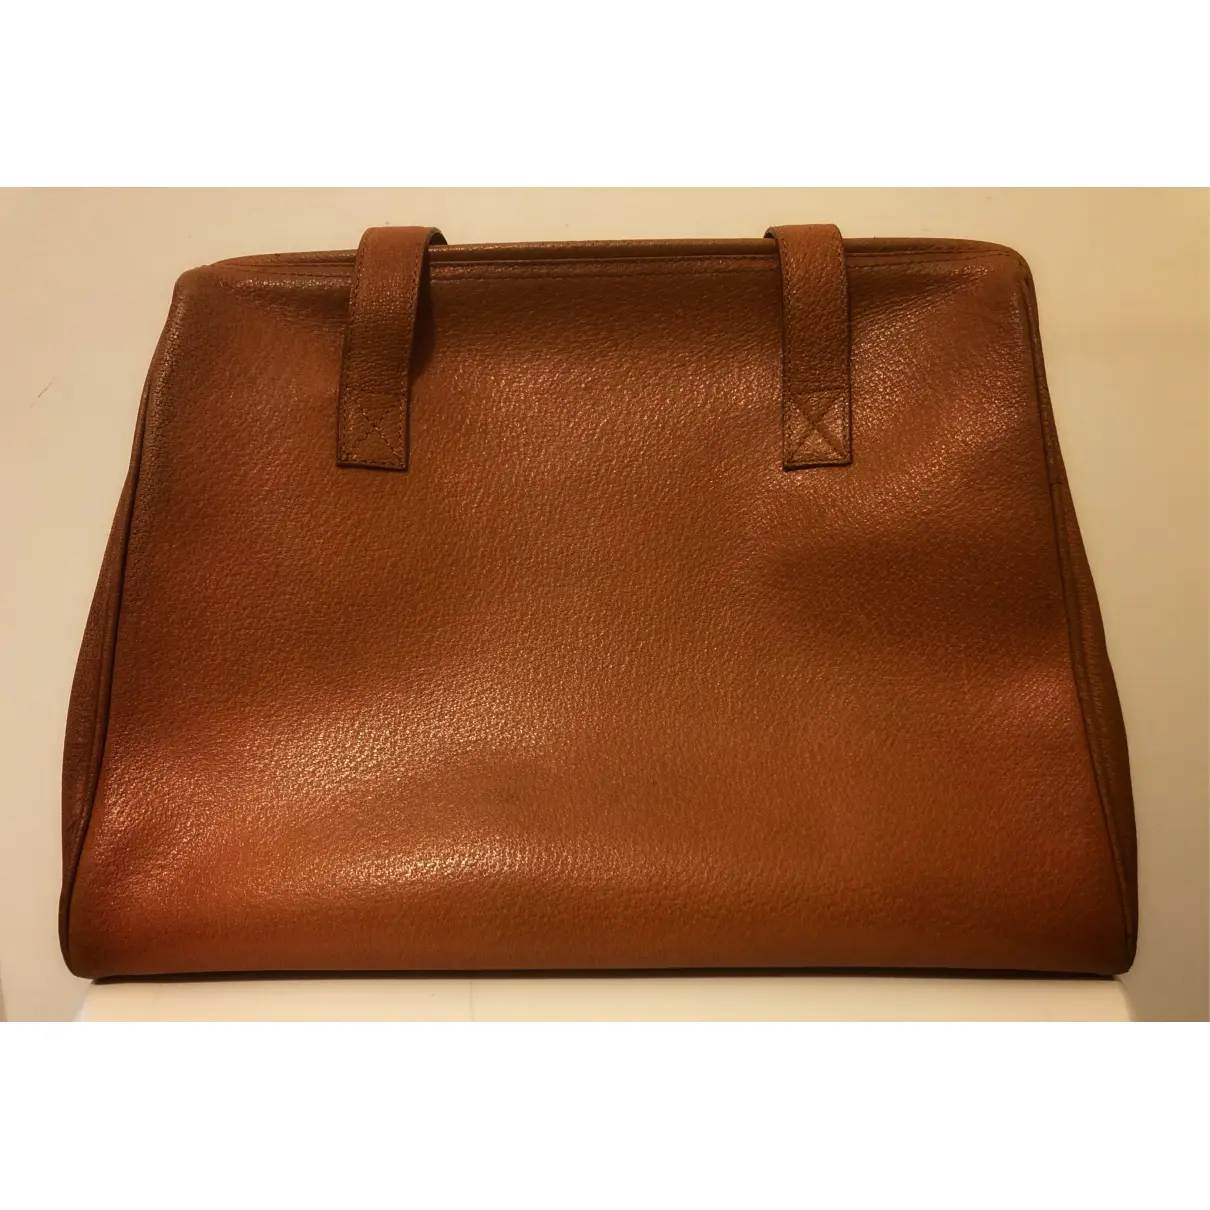 Buy Fendissime Leather handbag online